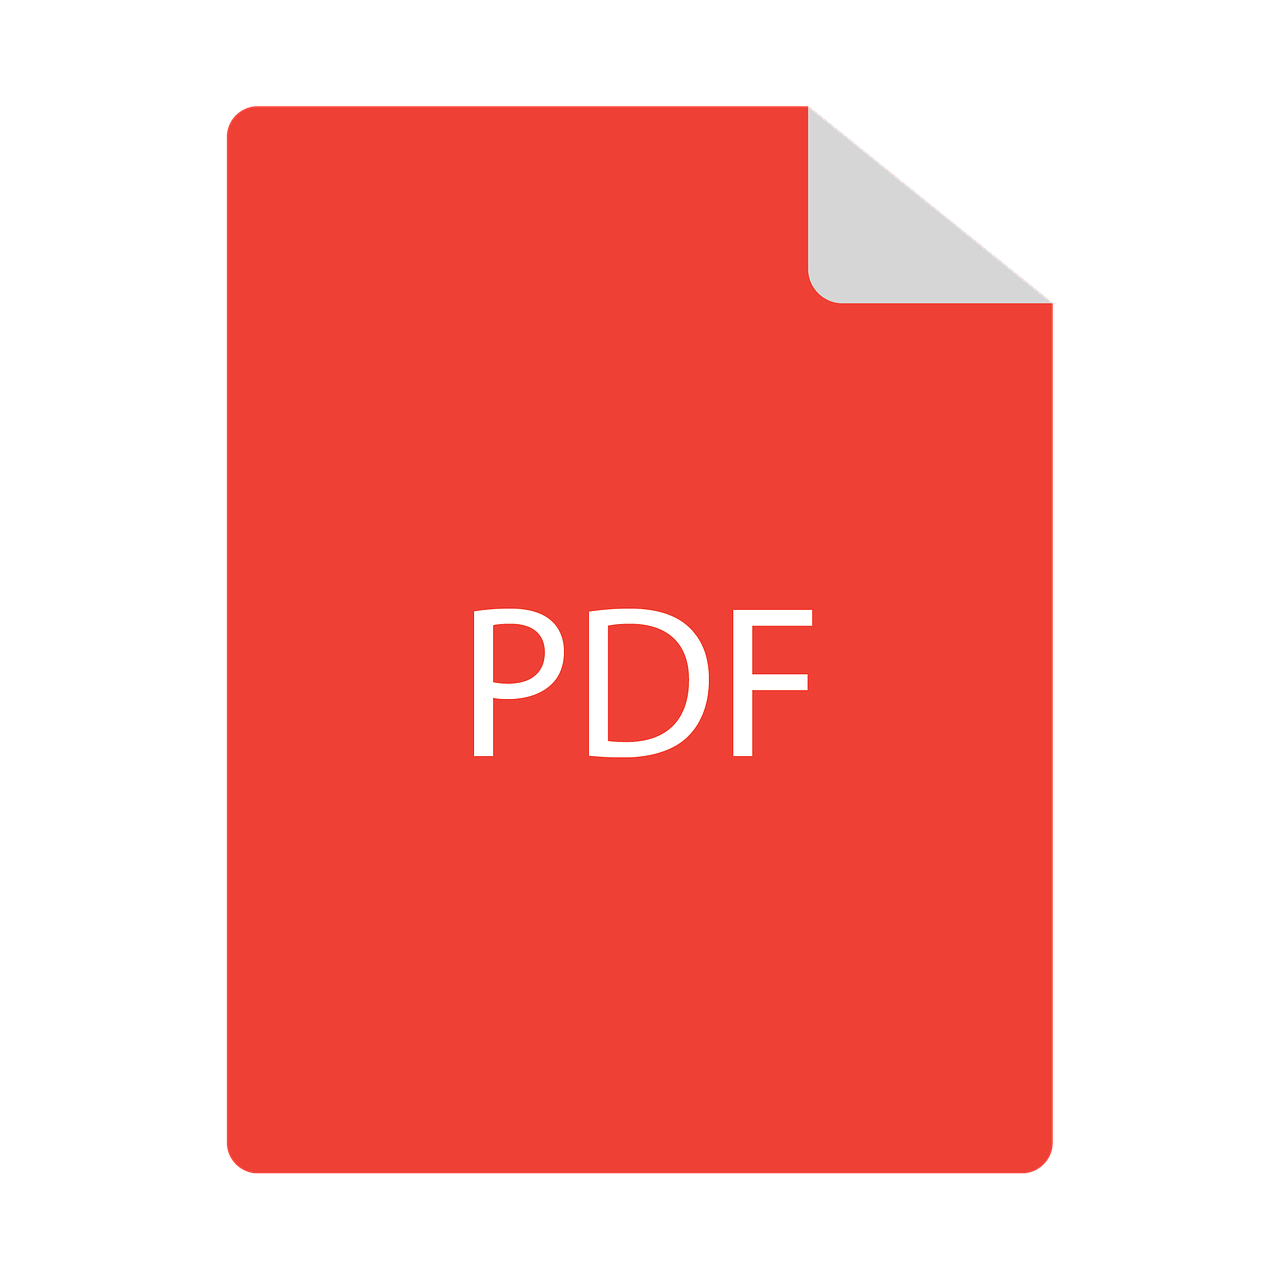 PDF download image